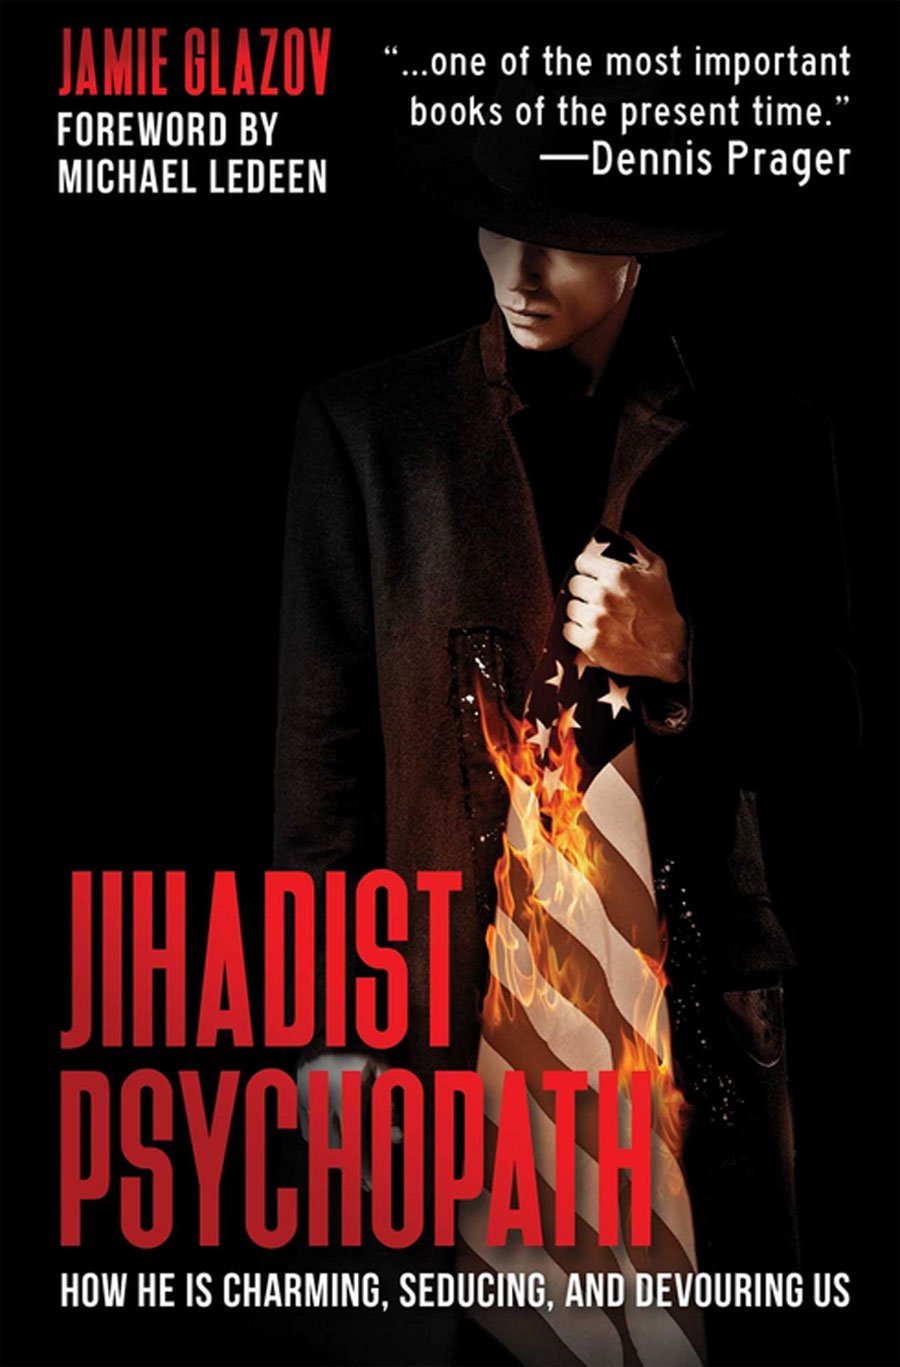 Jihadist Psychopath